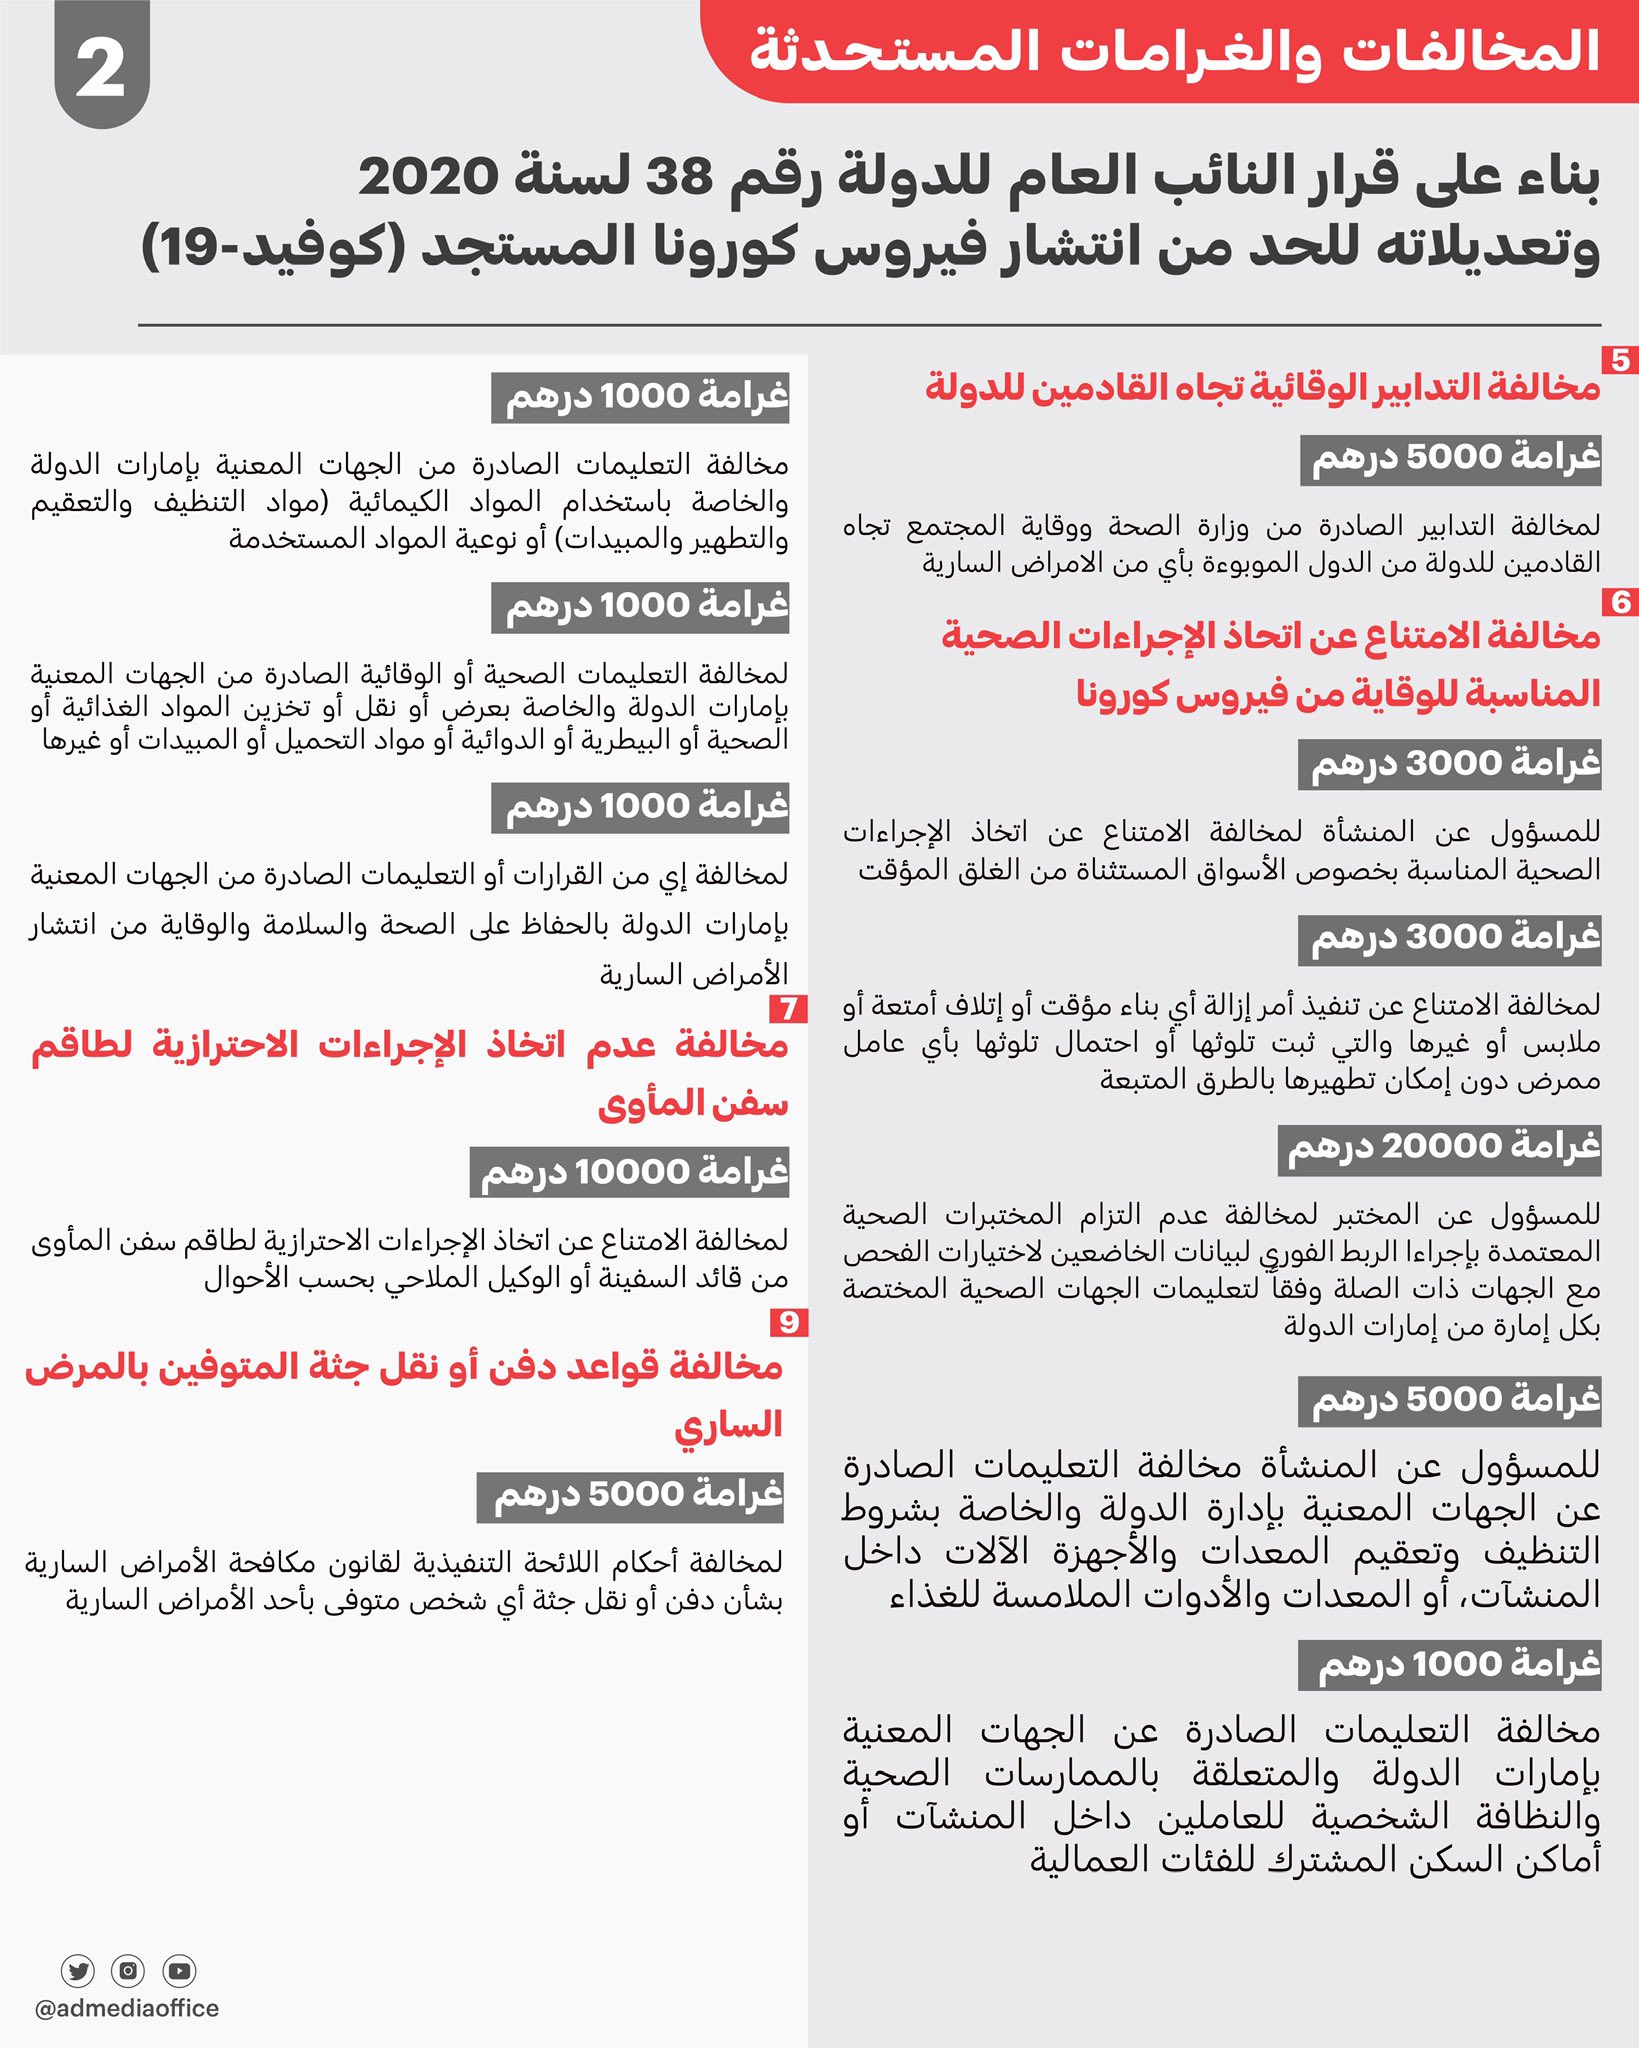 تشريعات لمكافحة فيروس كورونا المستجد (كوفيد 19) البوابة الرسمية لحكومة الإمارات العربية المتحدة